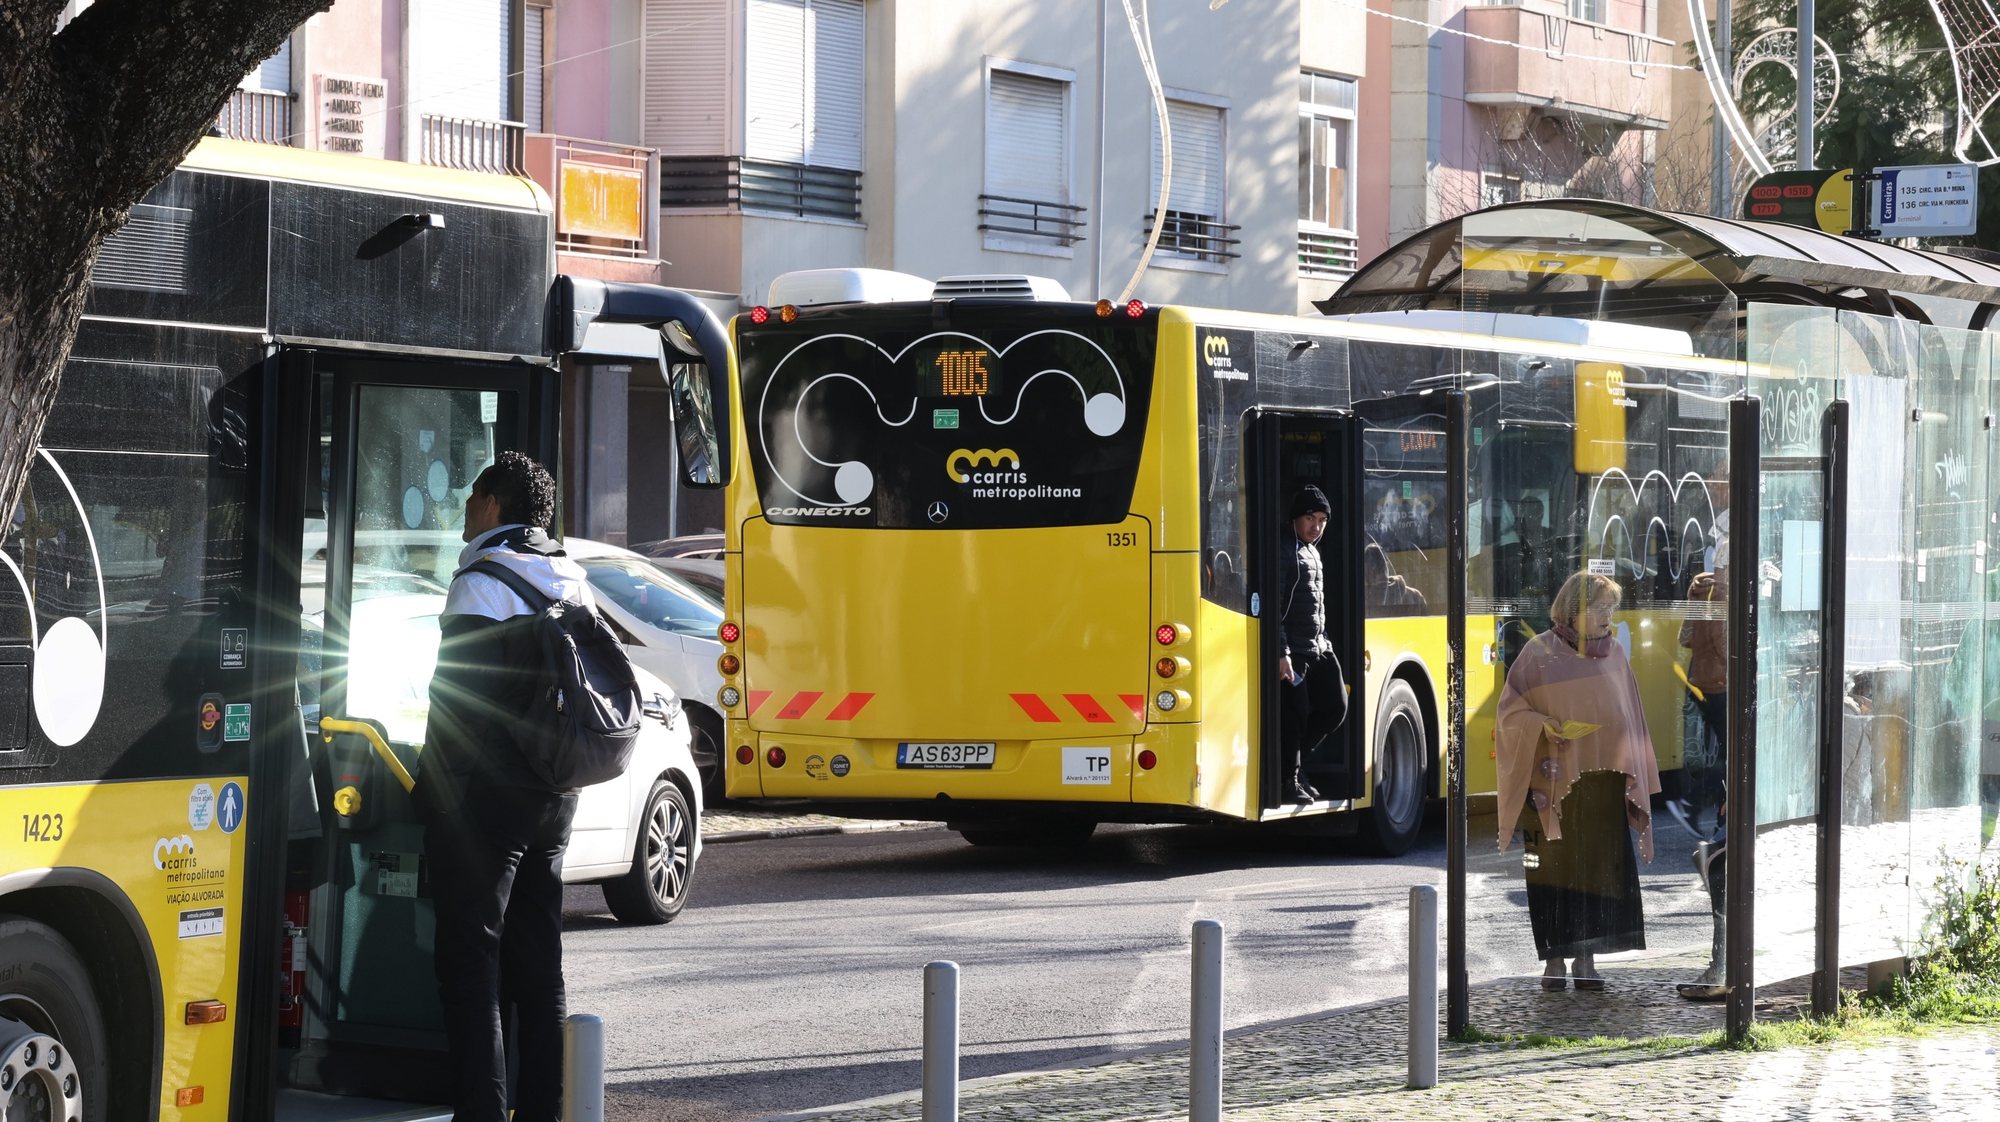 Quase duas semanas depois de a Carris Metropolitana começar, no distrito de Lisboa, os passageiros vêm mais autocarros em alguns locais, mas lamentam os atrasos constantes das carreiras e a falta de horários fora das horas de ponta, Amadora, 12 de janeiro de 2023. ANTÓNIO COTRIM/LUSA